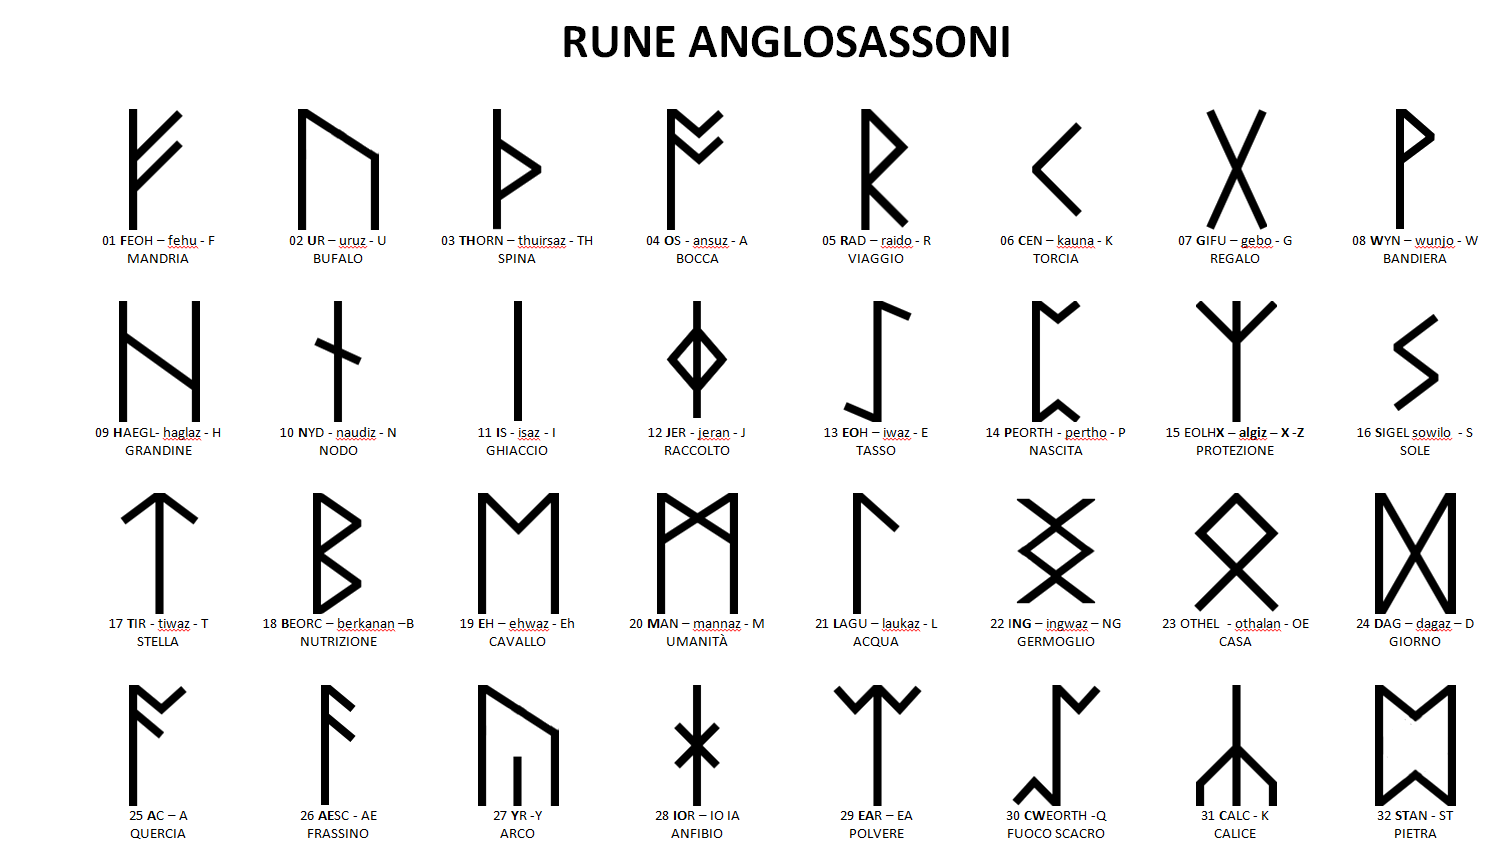 le rune